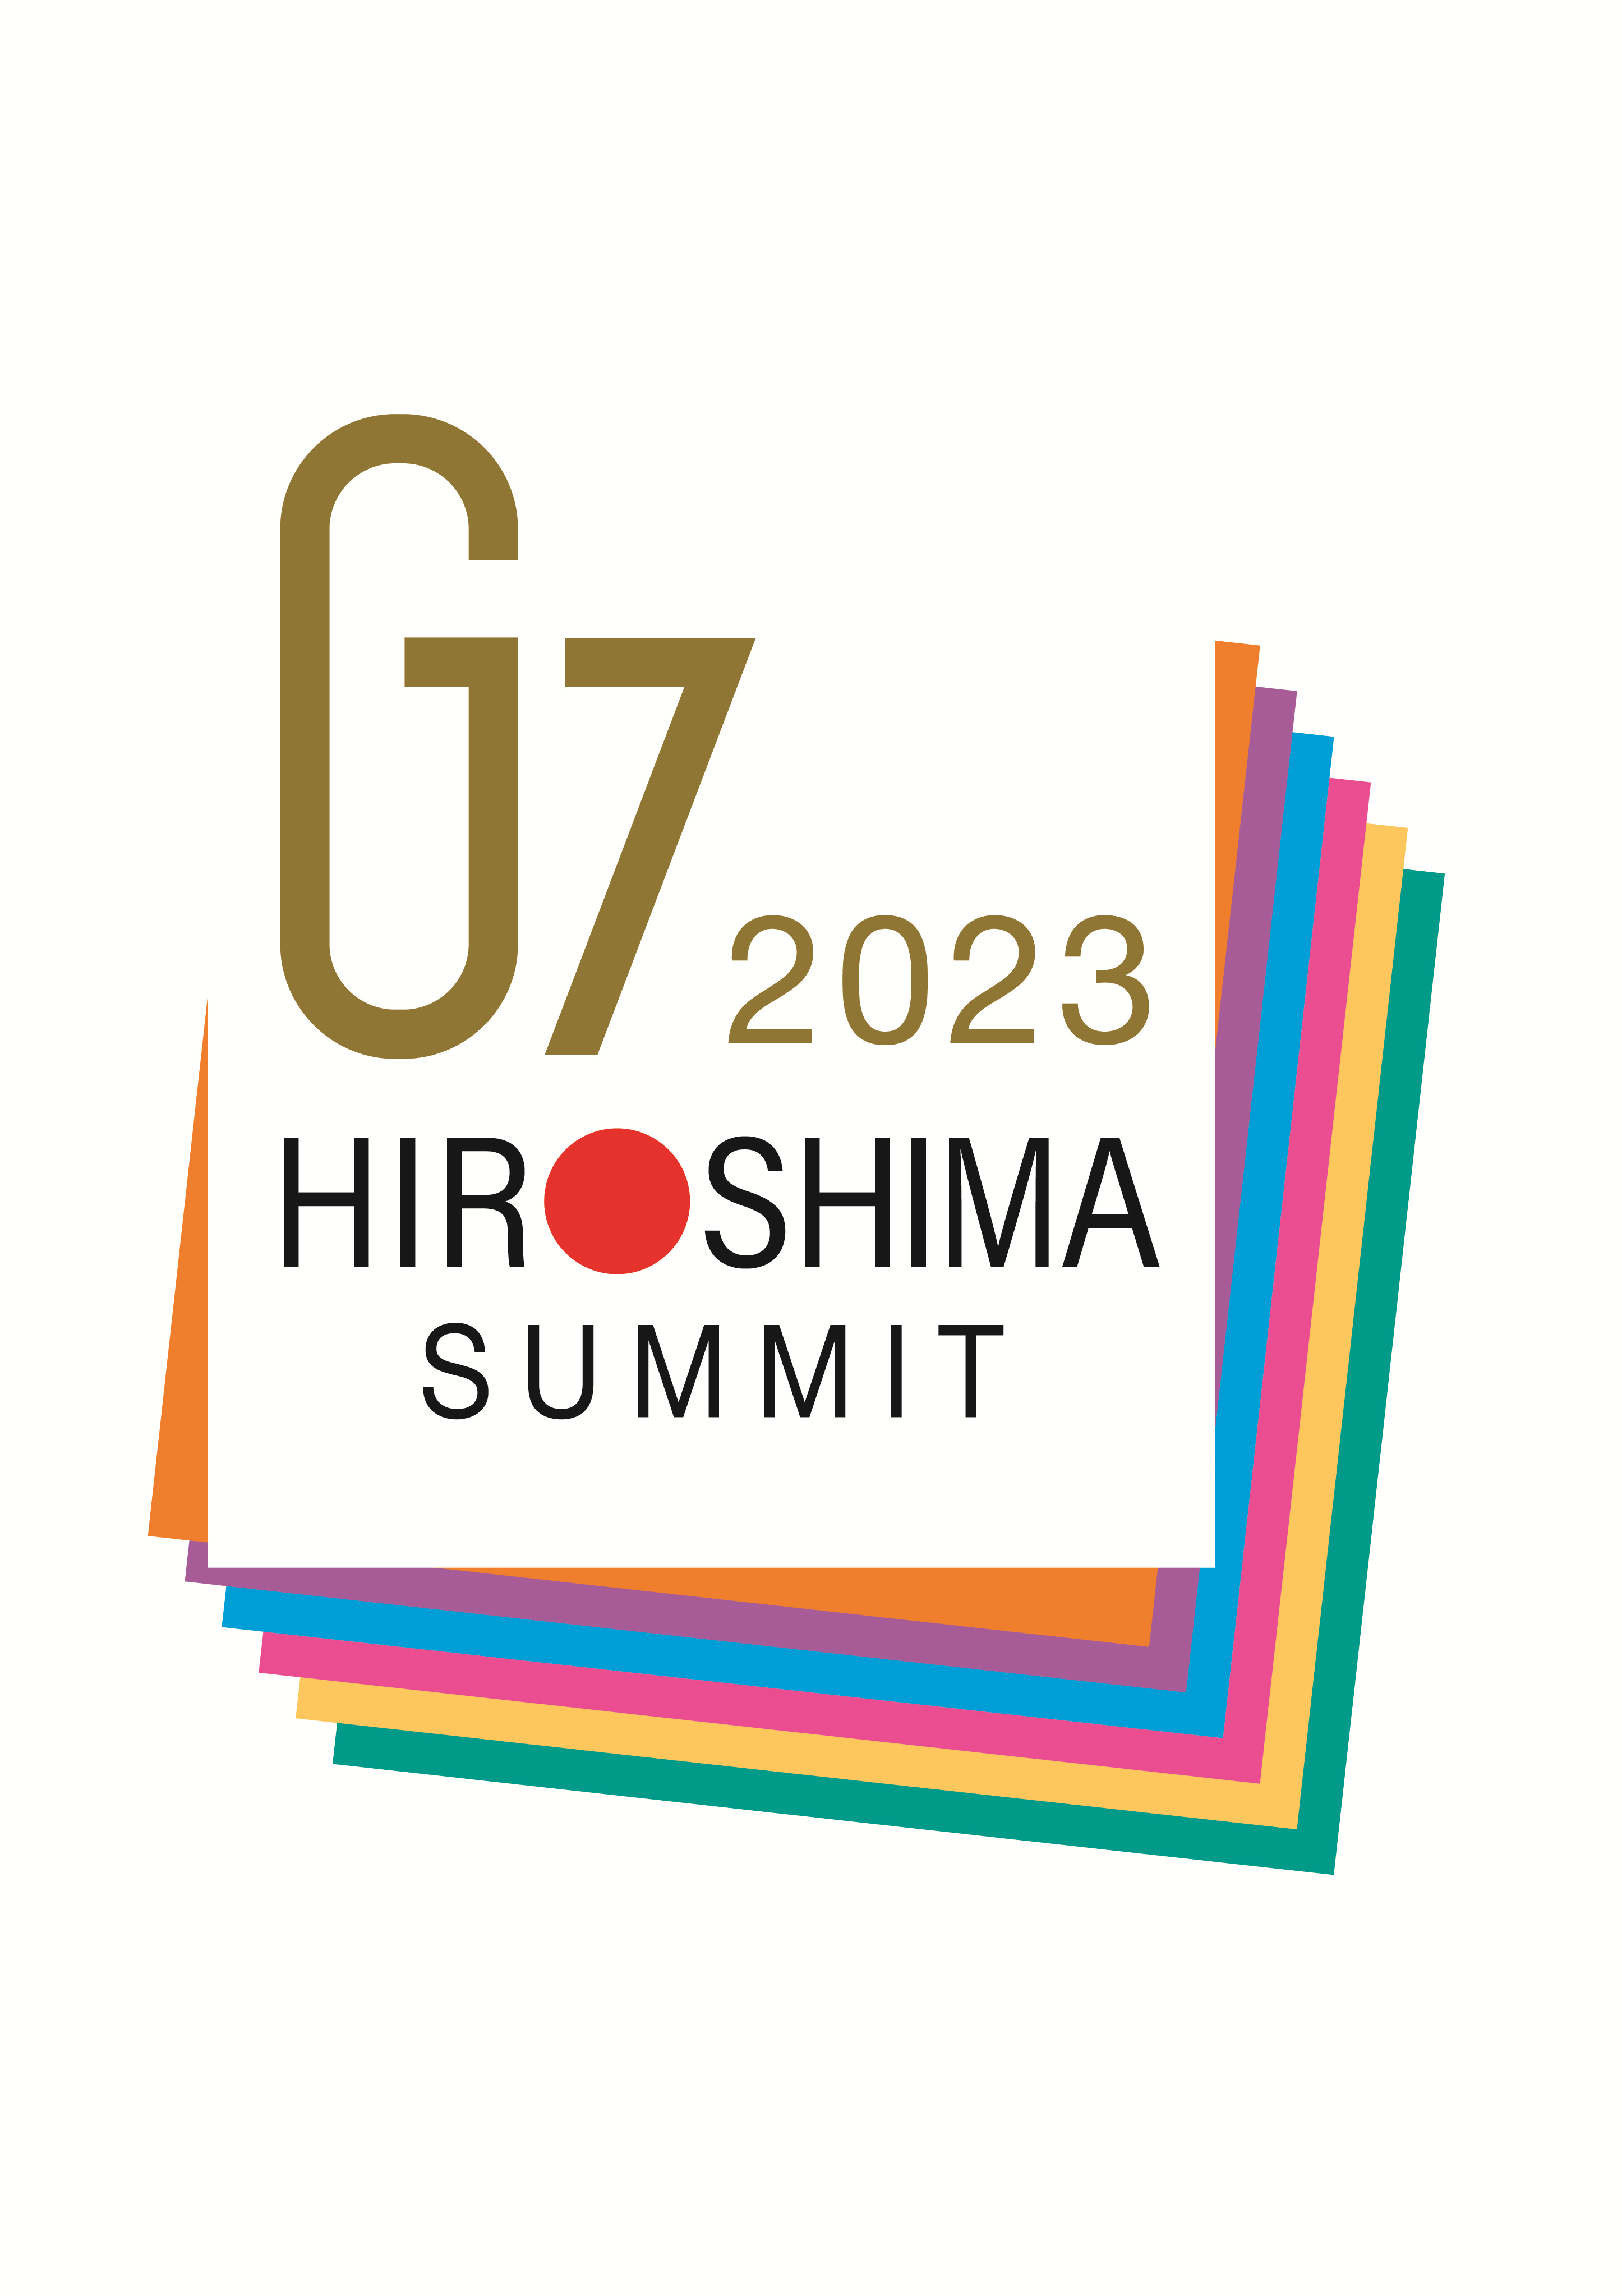 Logo of the 2023 G7 Japanese Presidency